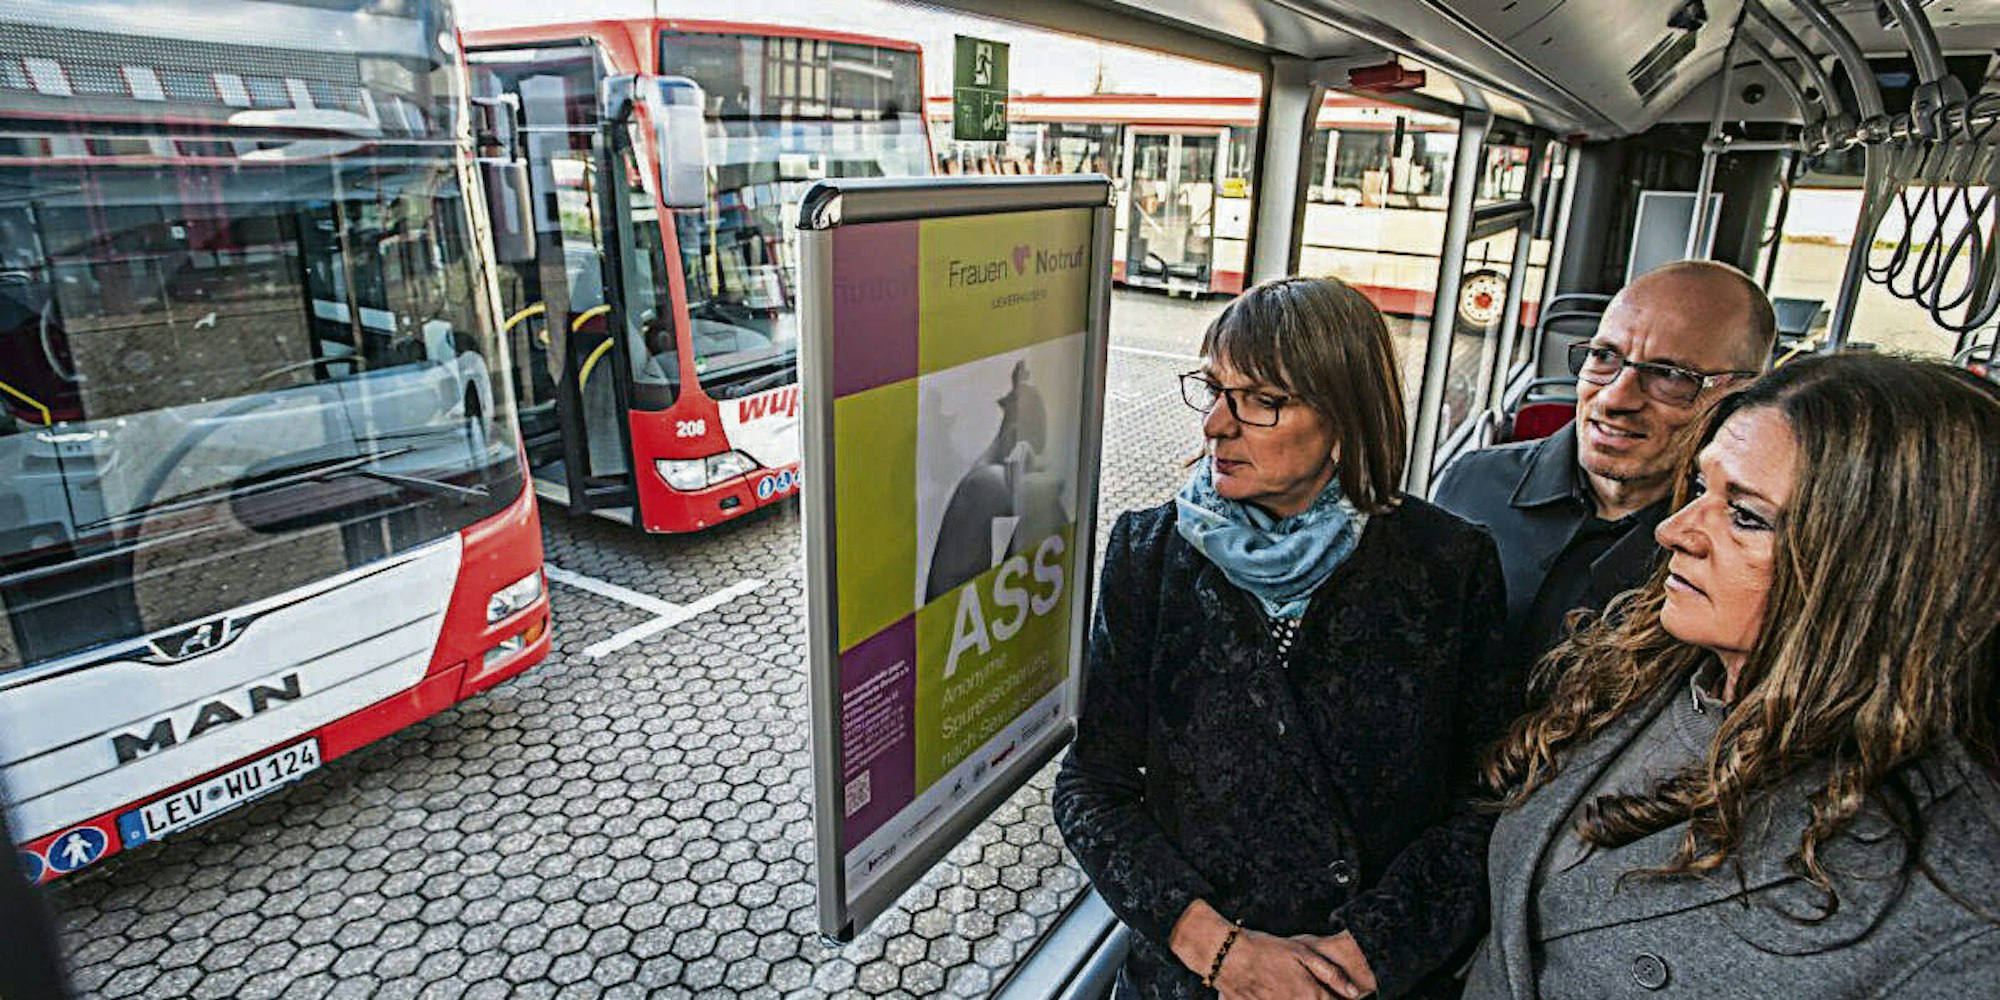 Der Frauennotruf Leverkusen macht mit Plakaten auf die anonyme Spurensicherung nach Sexualstraftaten aufmerksam.